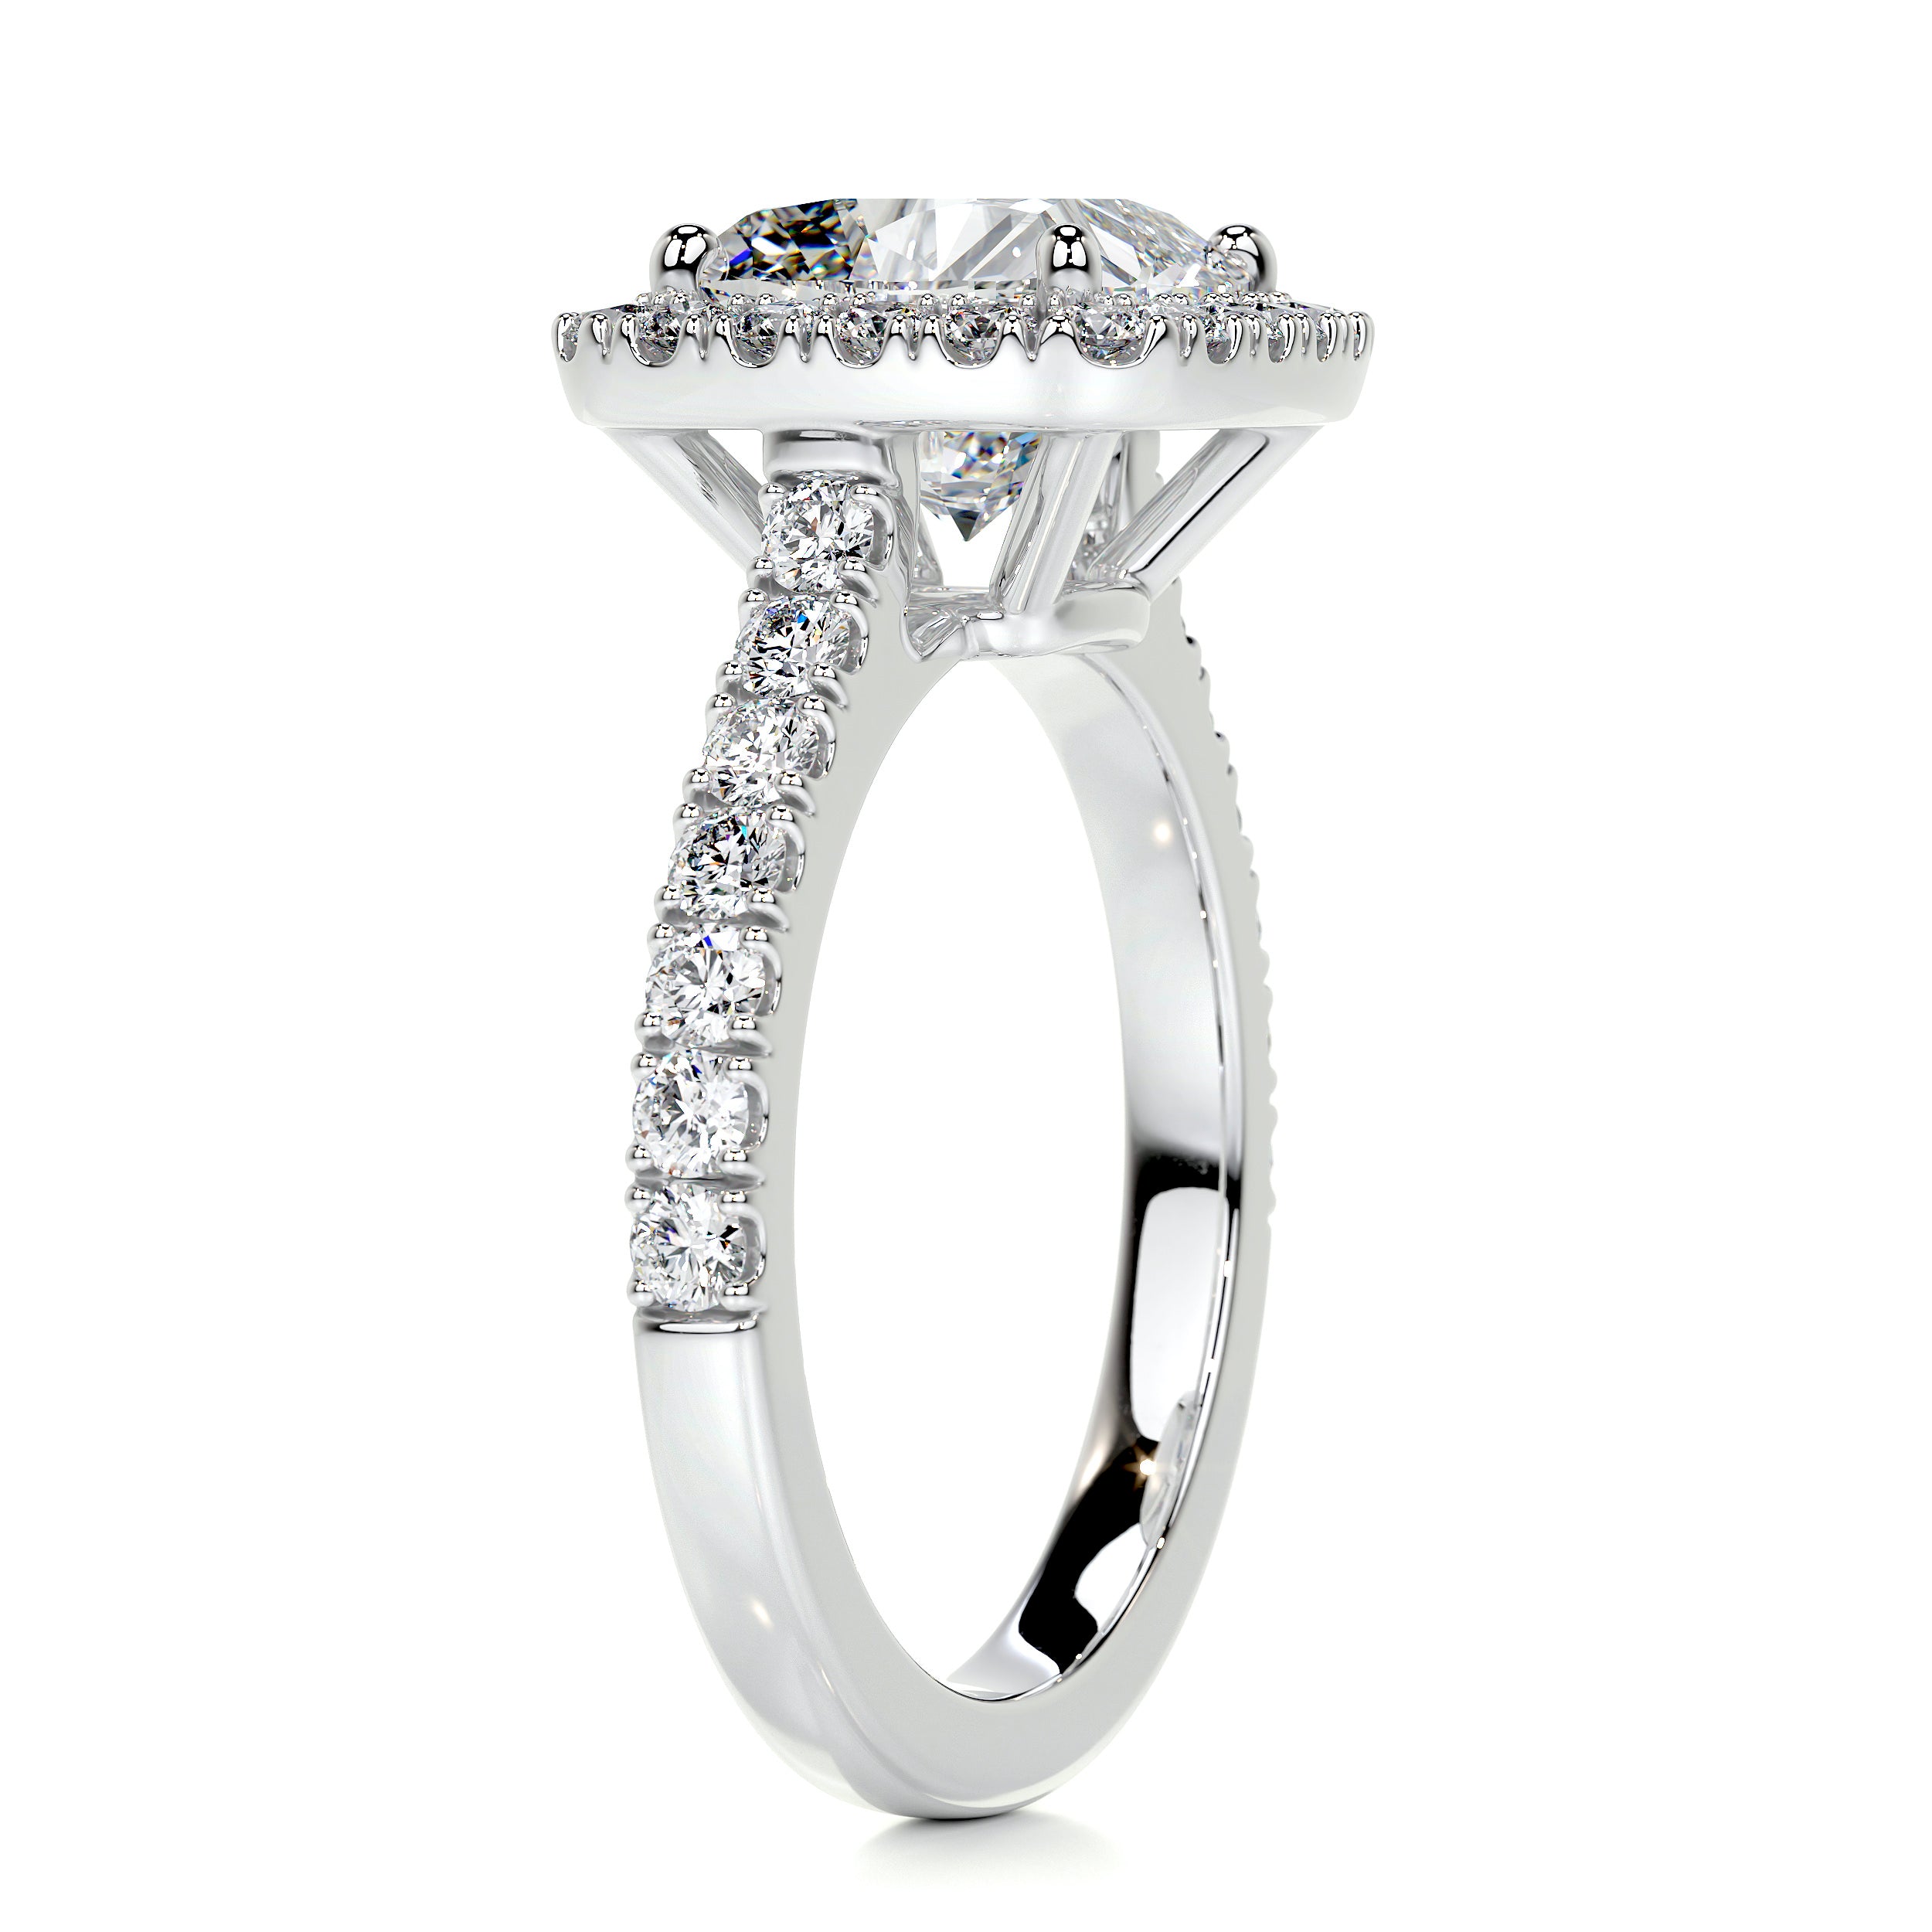 Celeste Diamond Engagement Ring   (3 Carat) -14K White Gold